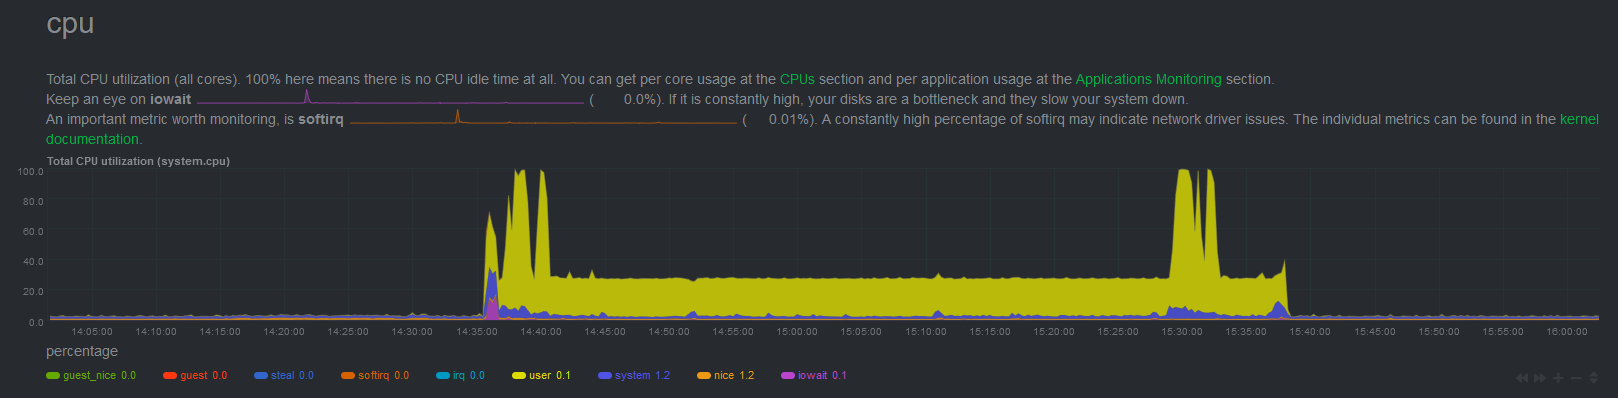 RPi 4 - CPU usage during Docker Build